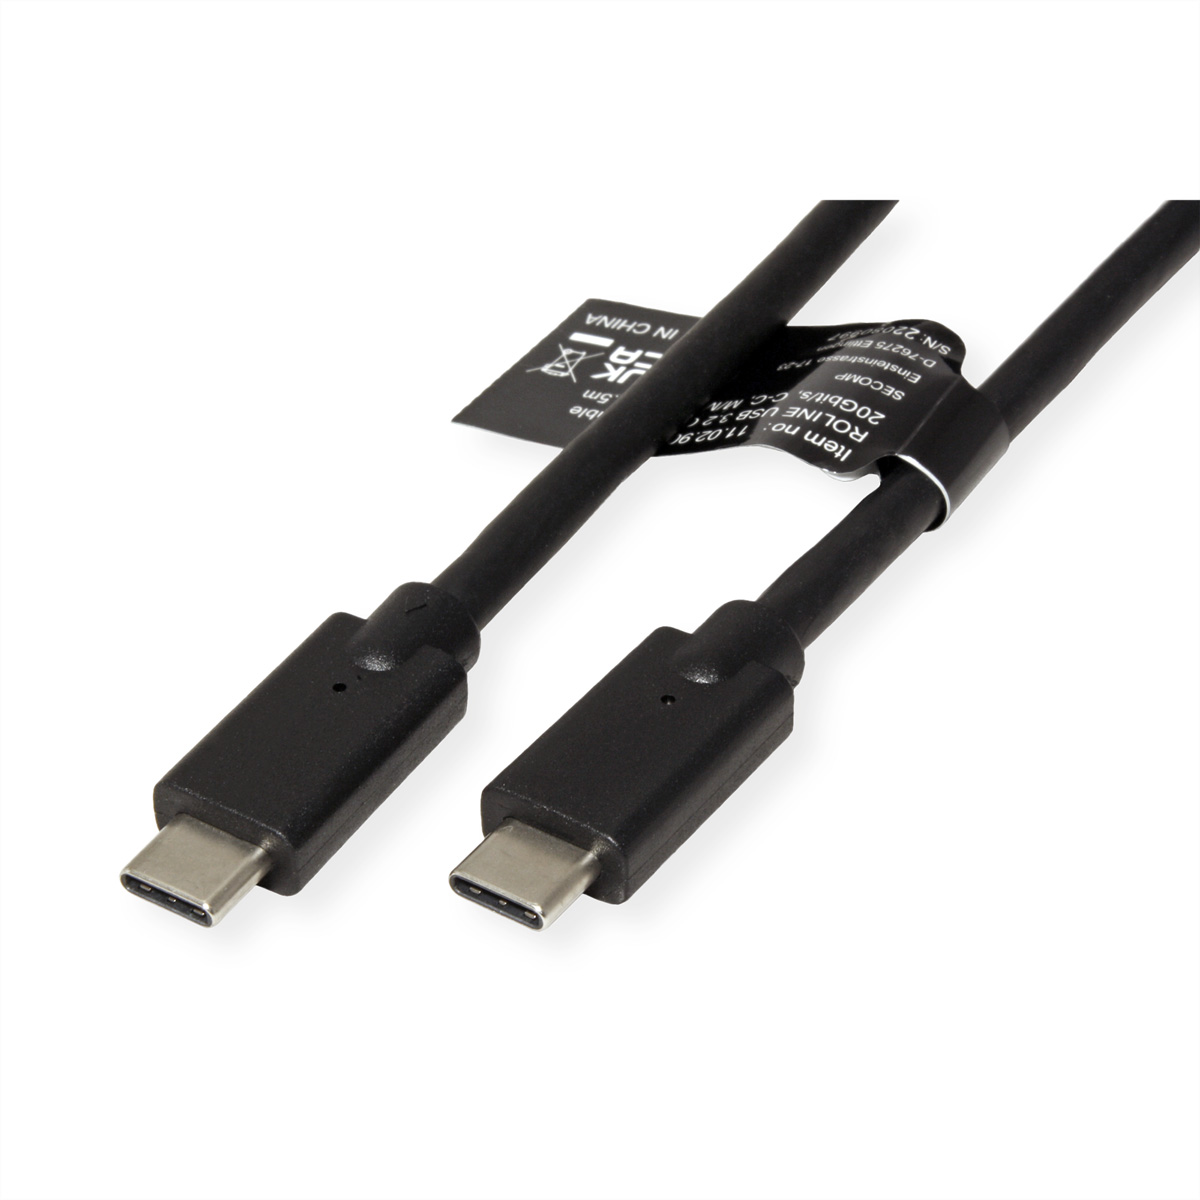 C–C, Gen2x2 ROLINE USB Kabel USB3.2 ST/ST 3.2 Kabel,